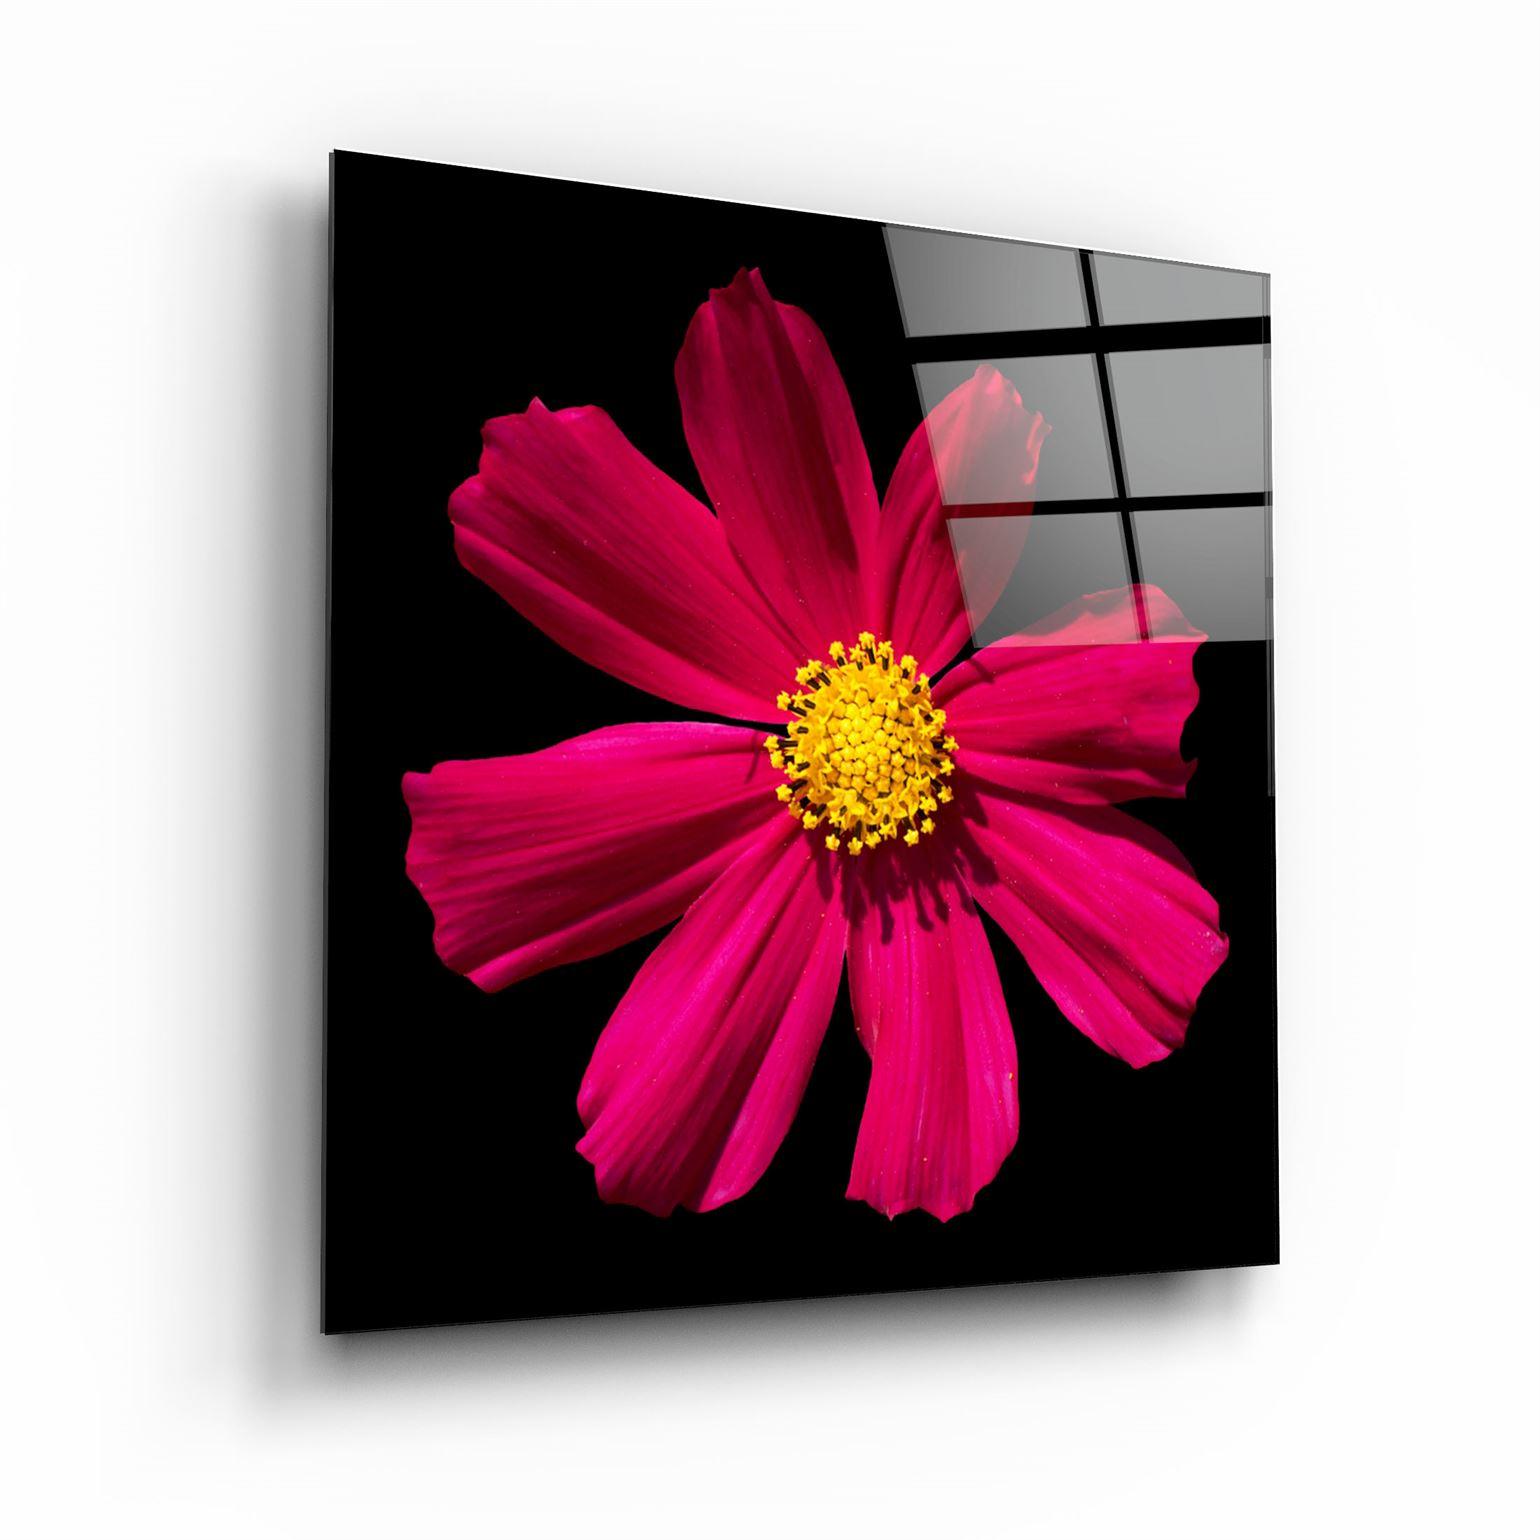 ・"Red flower"・Glass Wall Art - ArtDesigna Glass Printing Wall Art